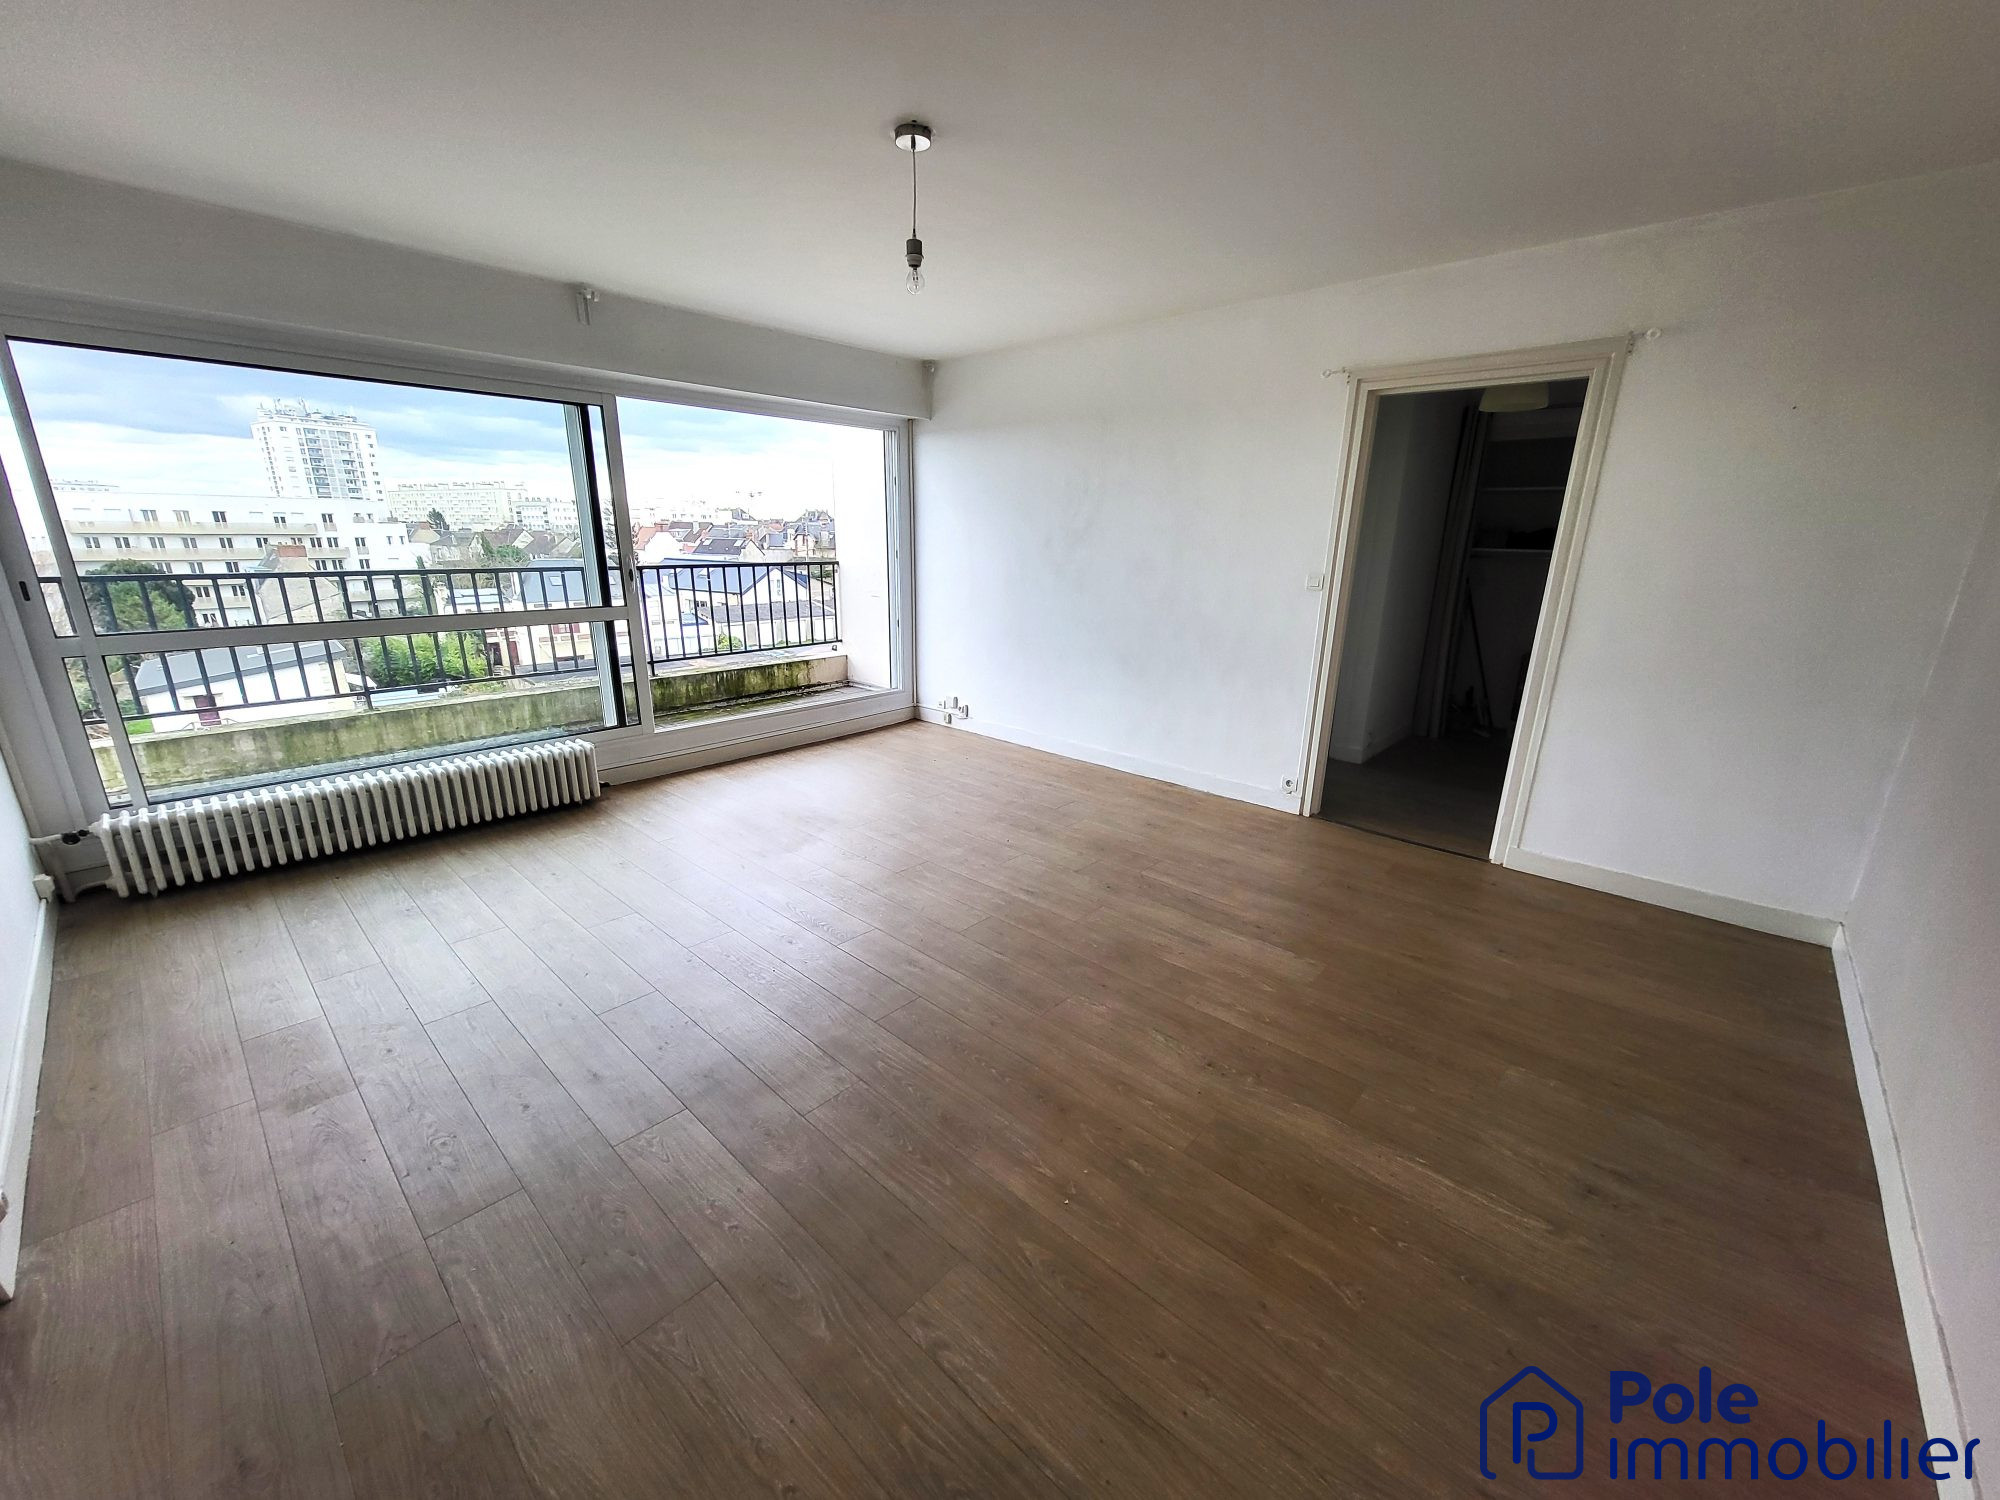 Vente Appartement 48m² 2 Pièces à Caen (14000) - Pole Immobilier